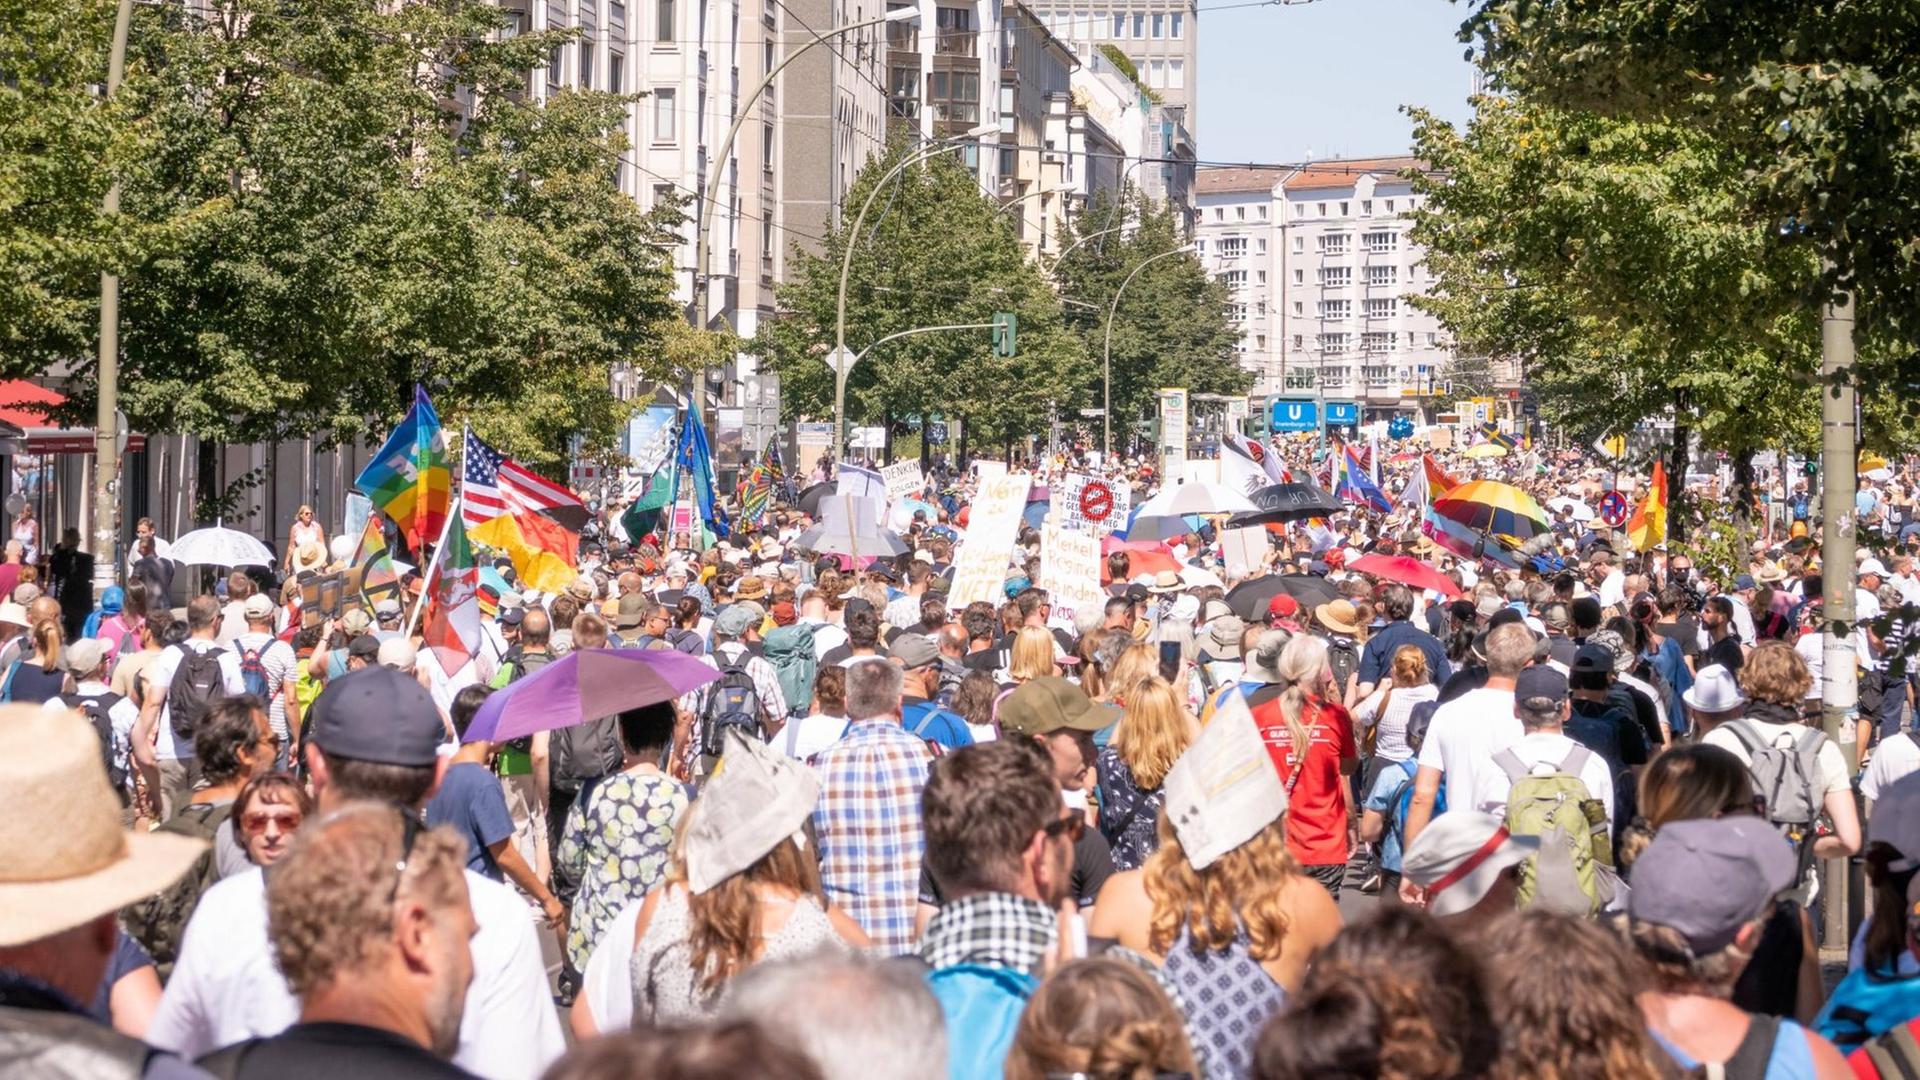 Teilnehmer der Demonstration gegen die Corona-Auflagen am 1.08.2020 in Berlin in der Nähe des U-Bahnhofs Friedrichstraße.